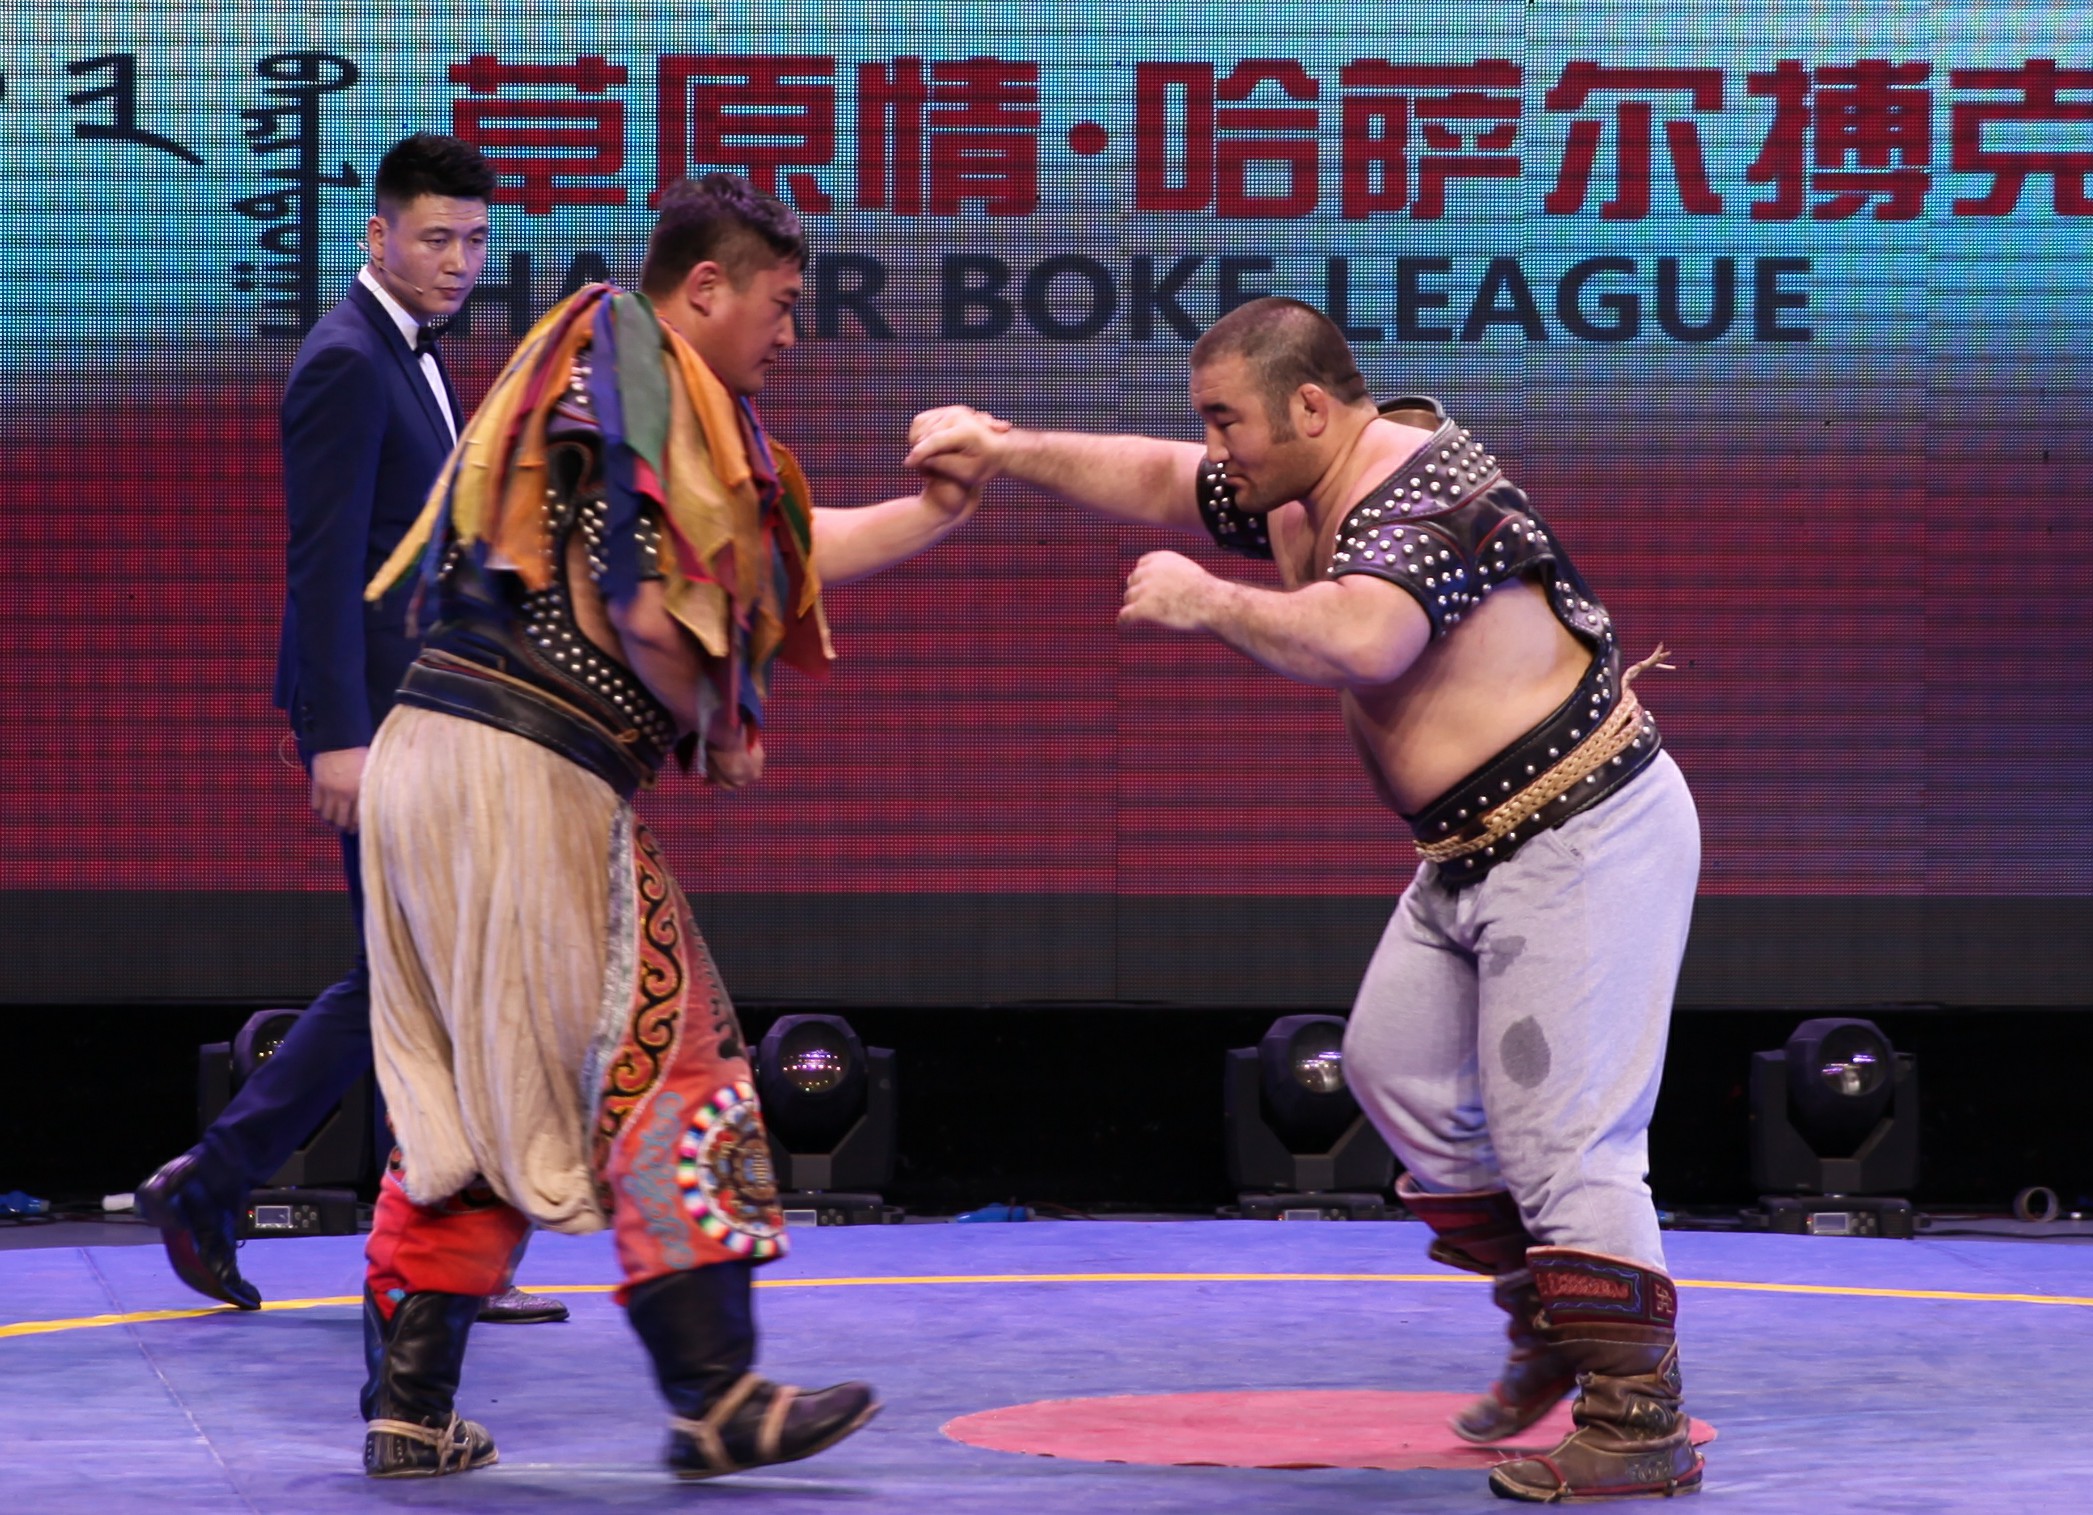 蒙古摔跤手合影图片